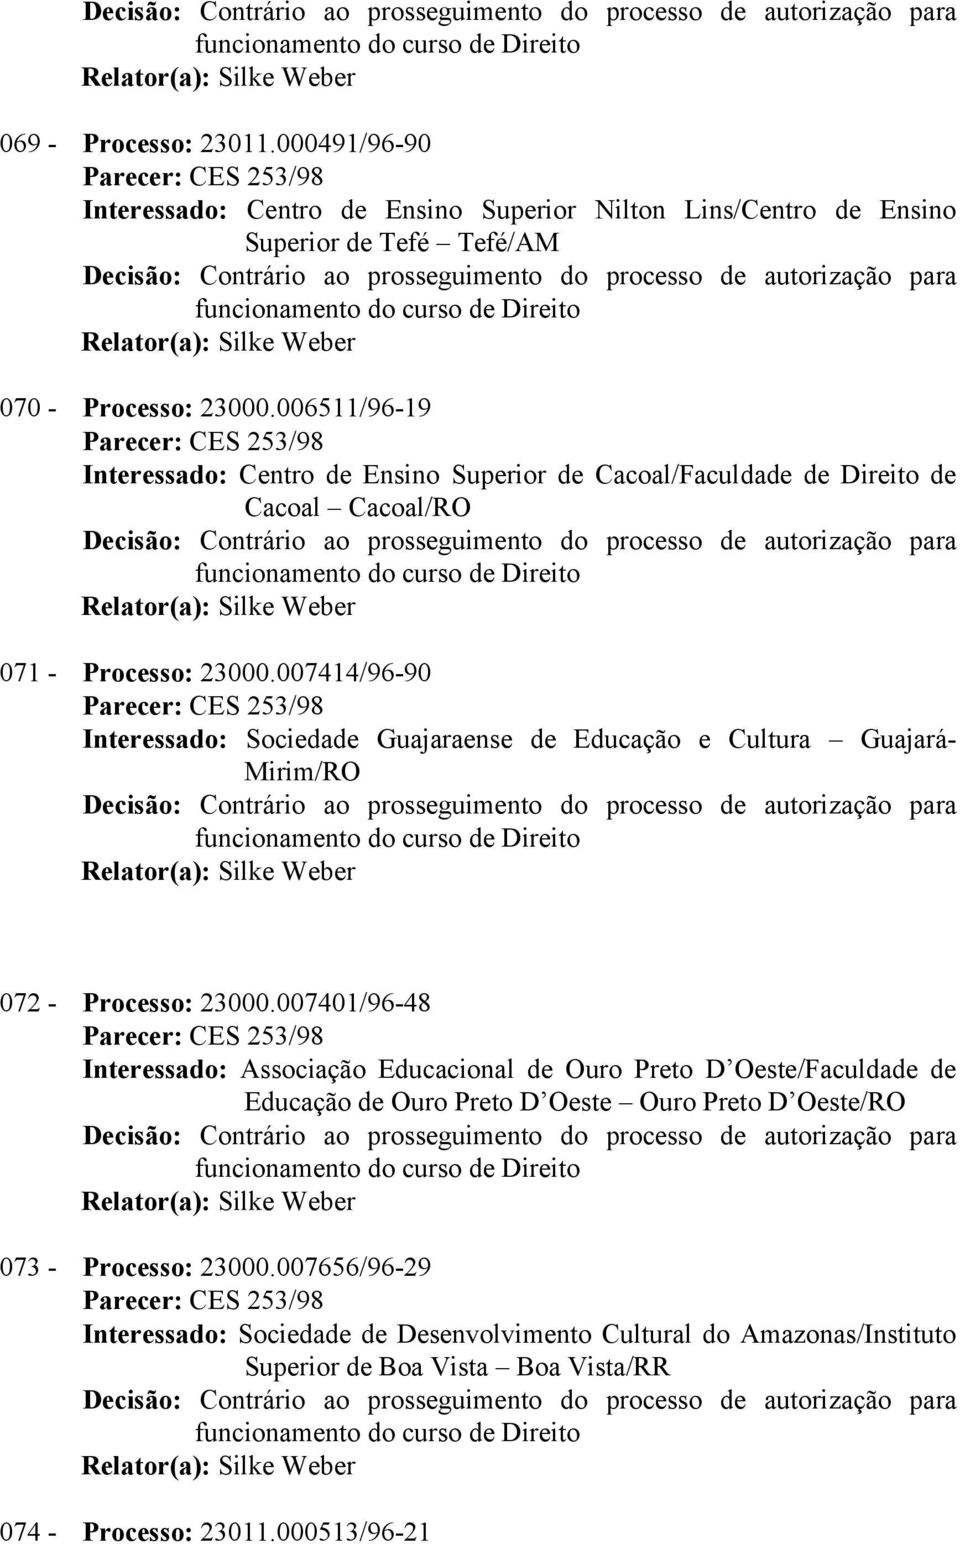 007414/96-90 Interessado: Sociedade Guajaraense de Educação e Cultura Guajará- Mirim/RO 072 - Processo: 23000.